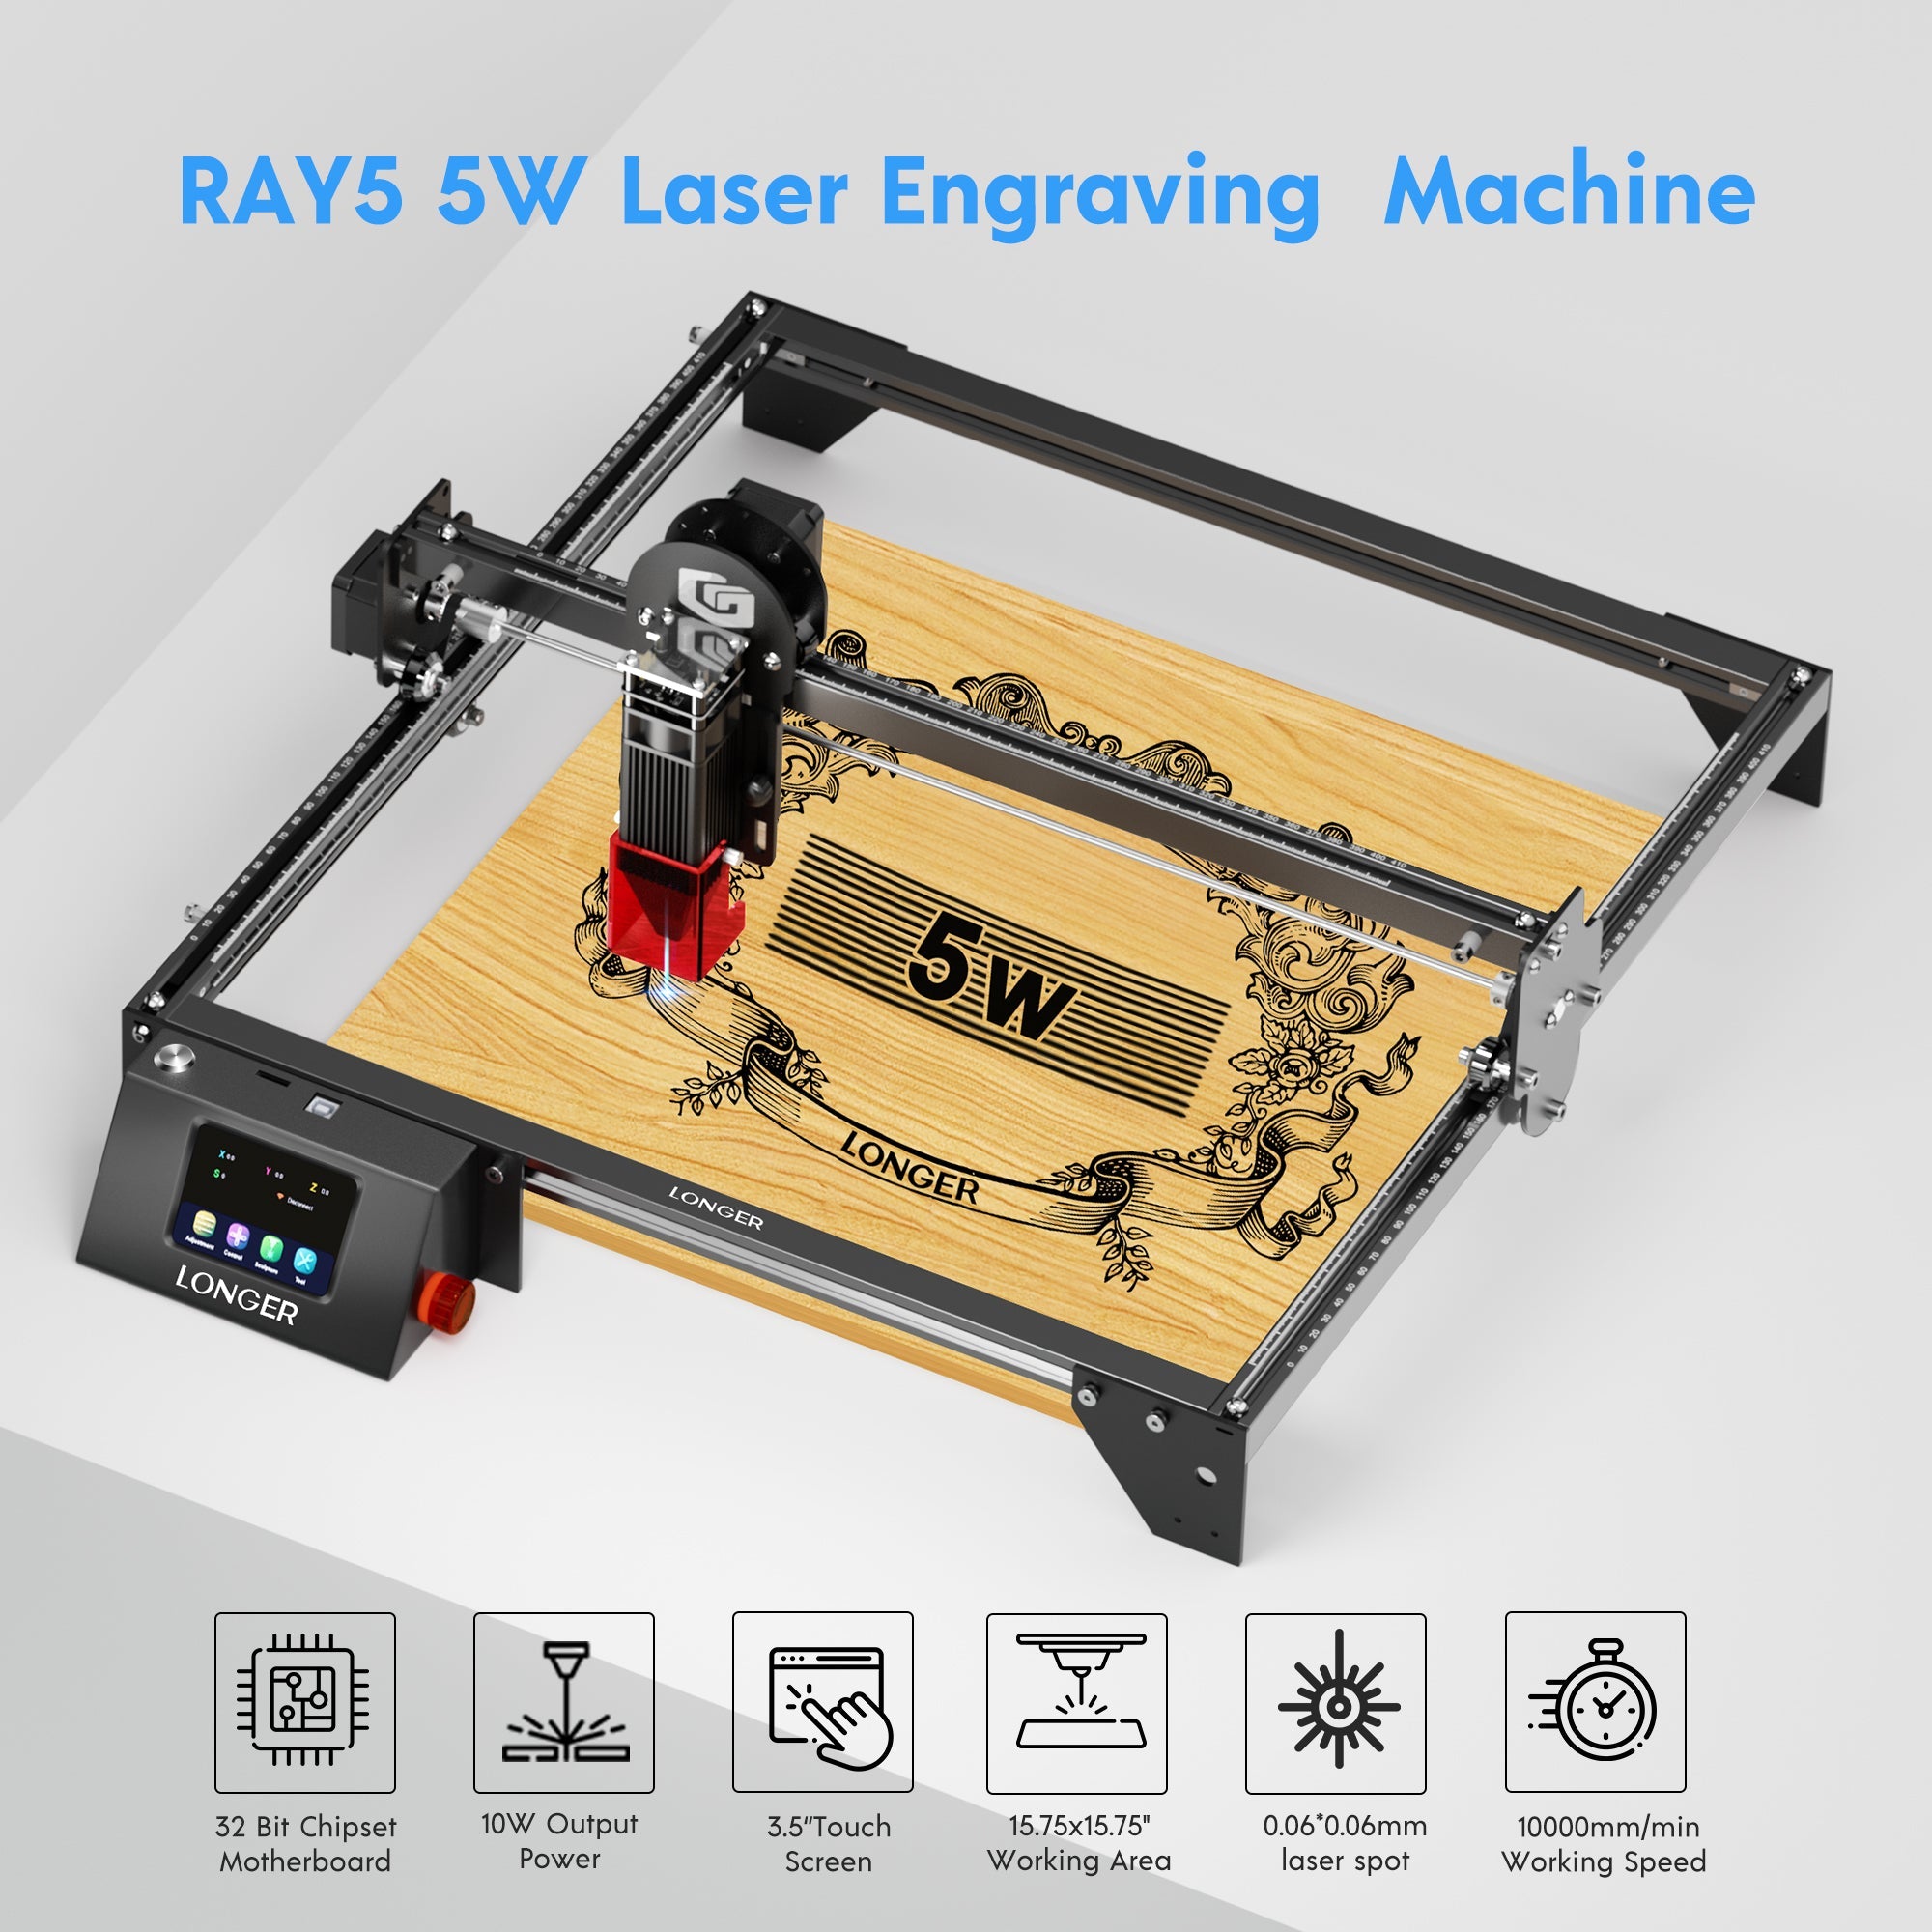 Longer RAY5 5W Laser Engraver - LONGER